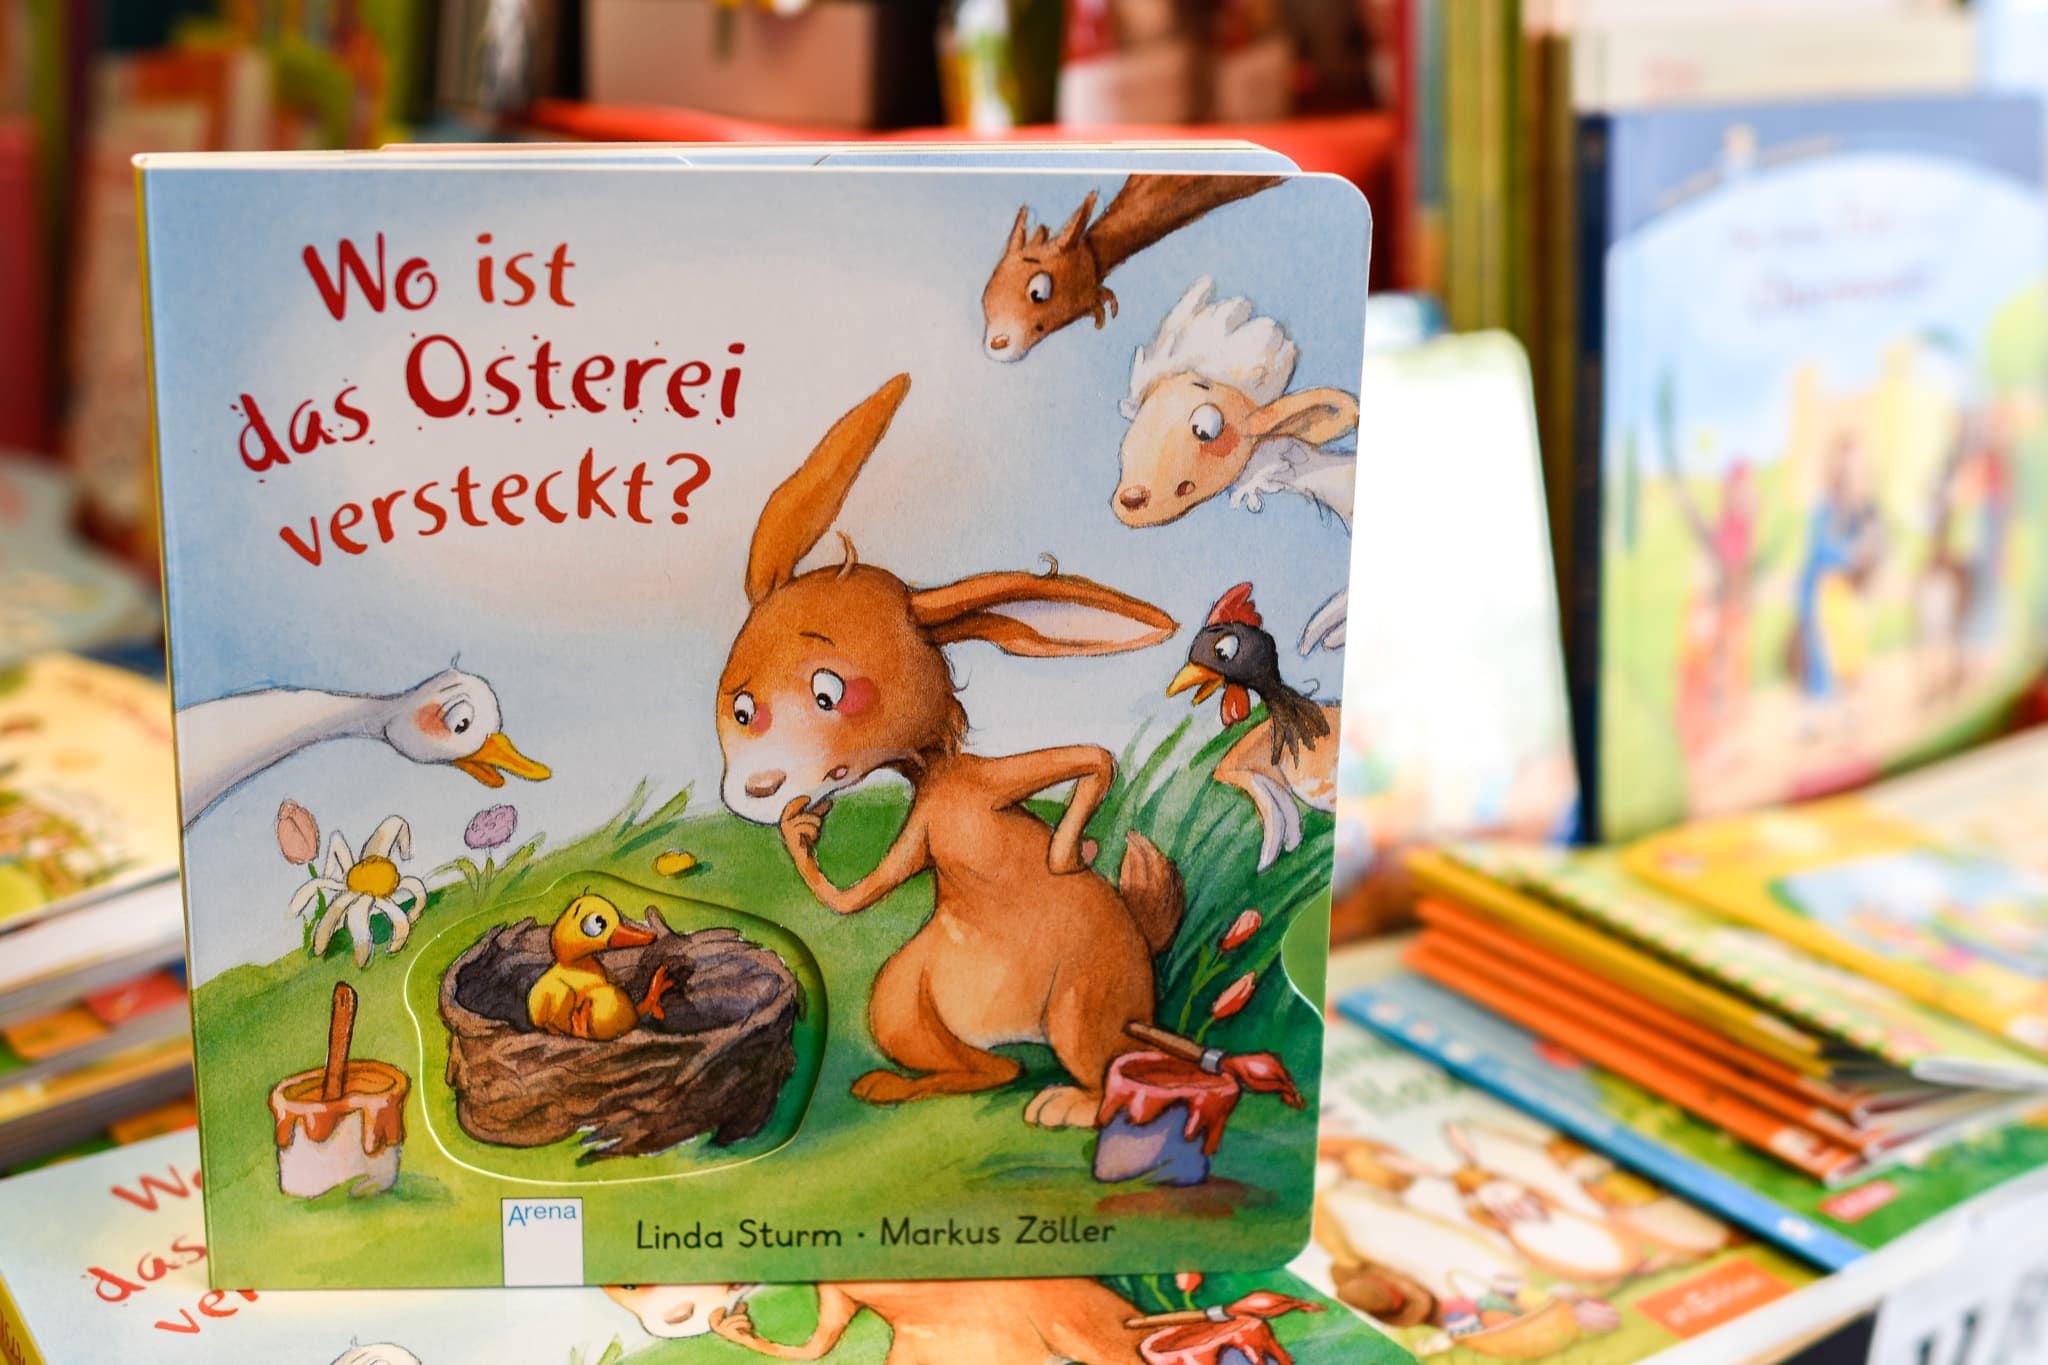 Osterbuch, Buch, Ostern, Ostergeschenke für Kinder, Geschenkideen, Osterfest, 9020 Klagenfurt am Wörthersee